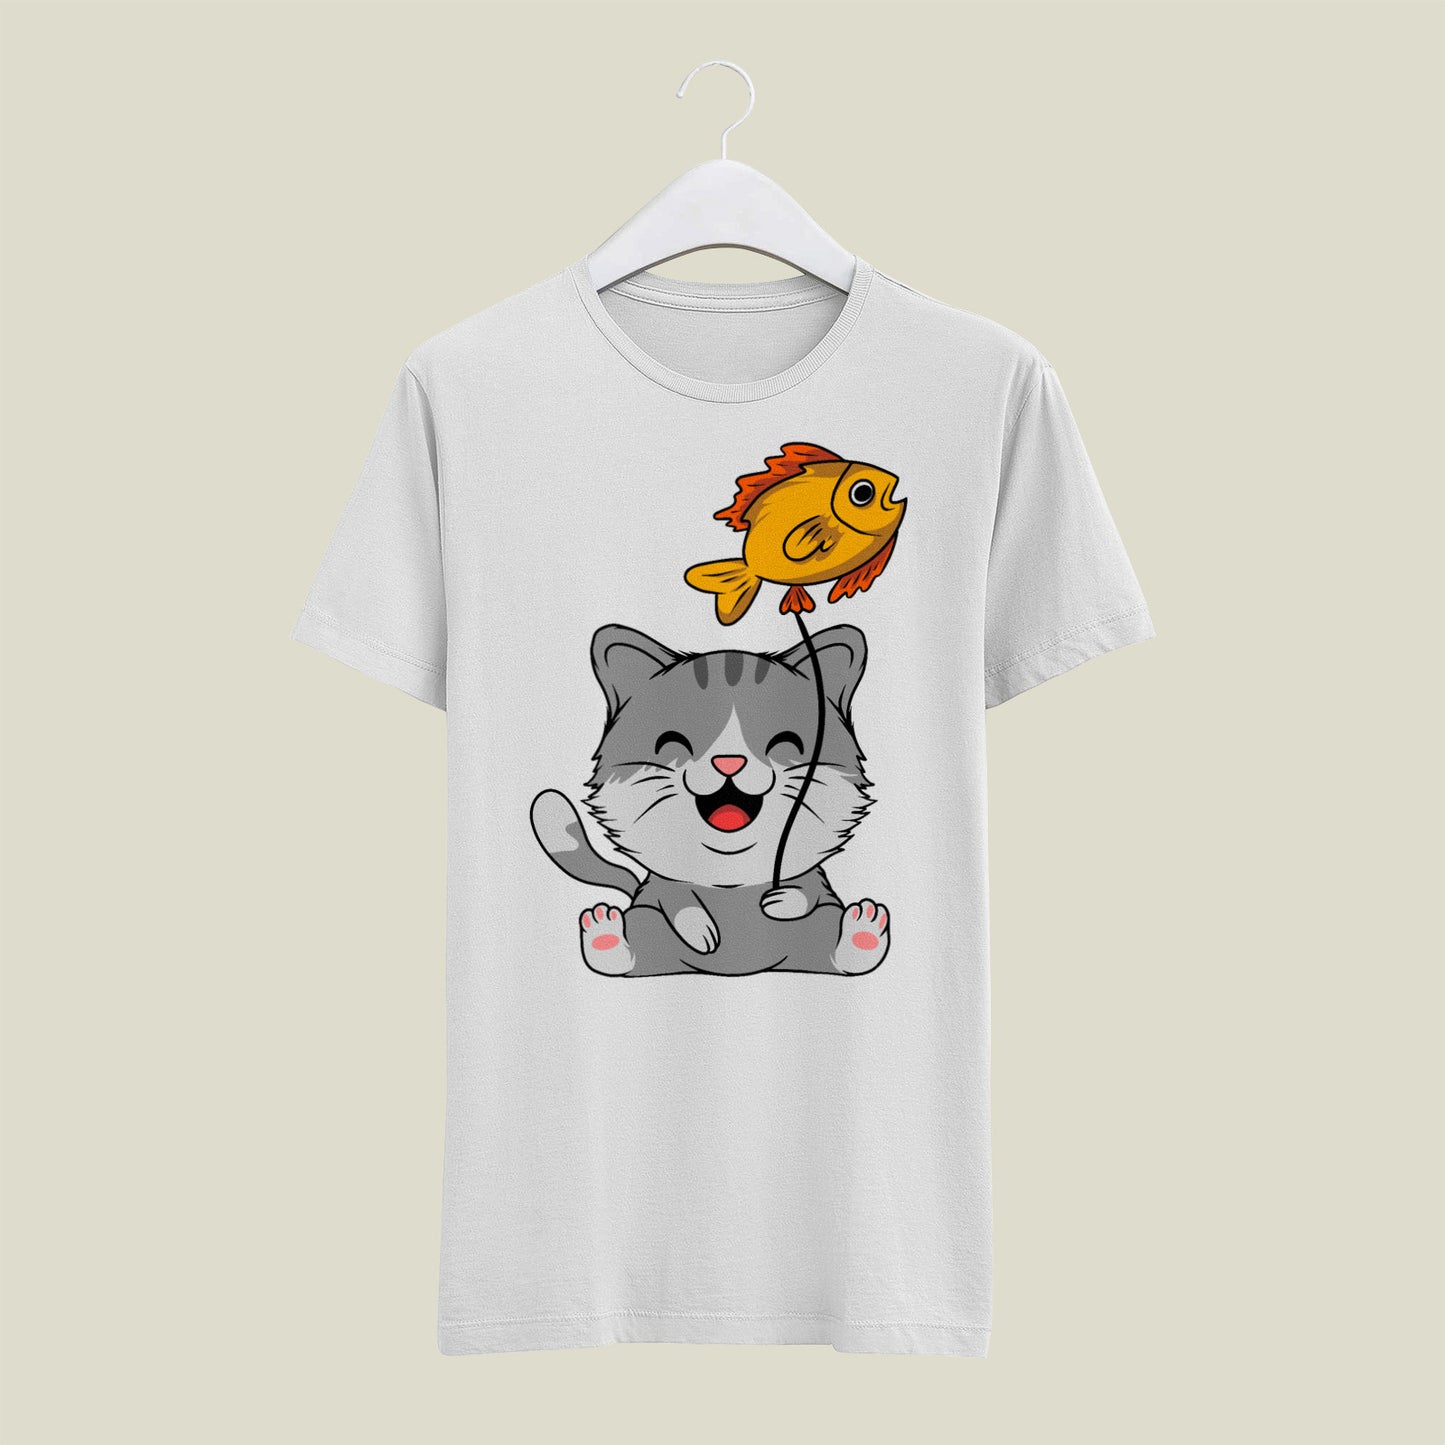 Cute kitty T-Shirt